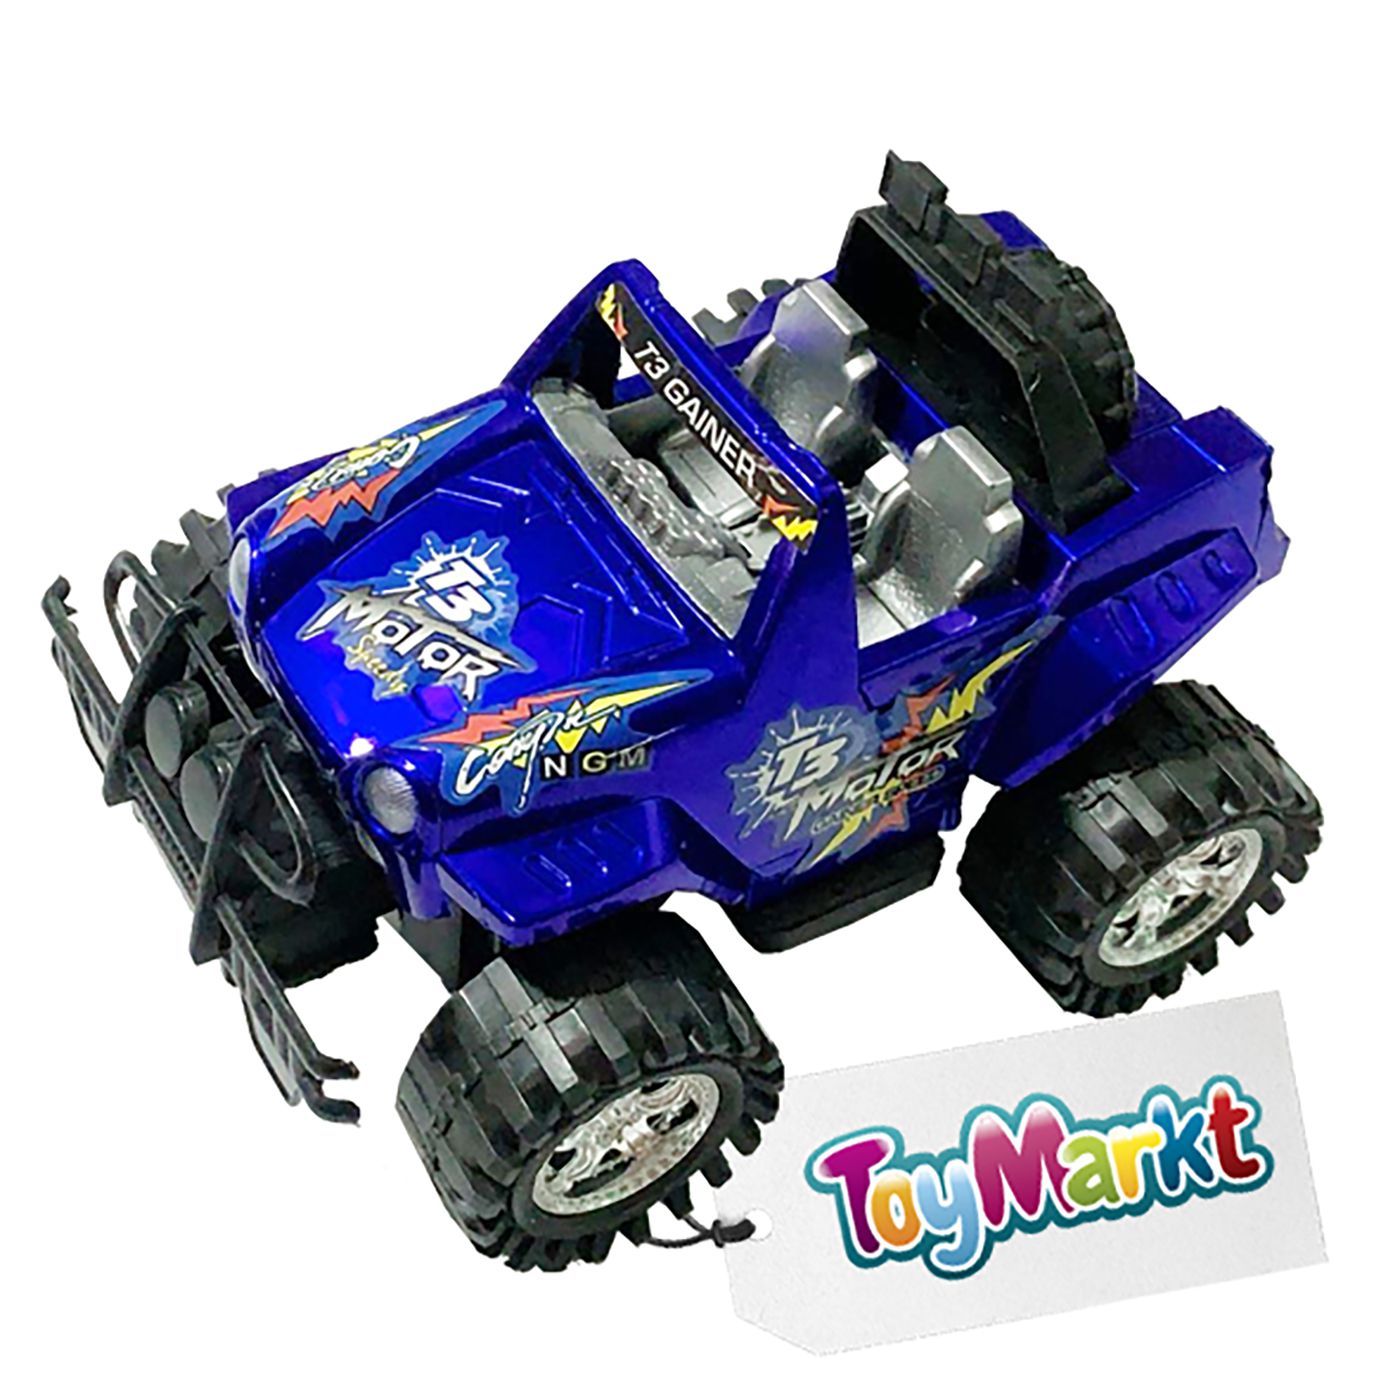 ΑΝΟΙΧΤΟ ΤΖΙΠΑΚΙ FRICTION 22cm ToyMarkt 902179